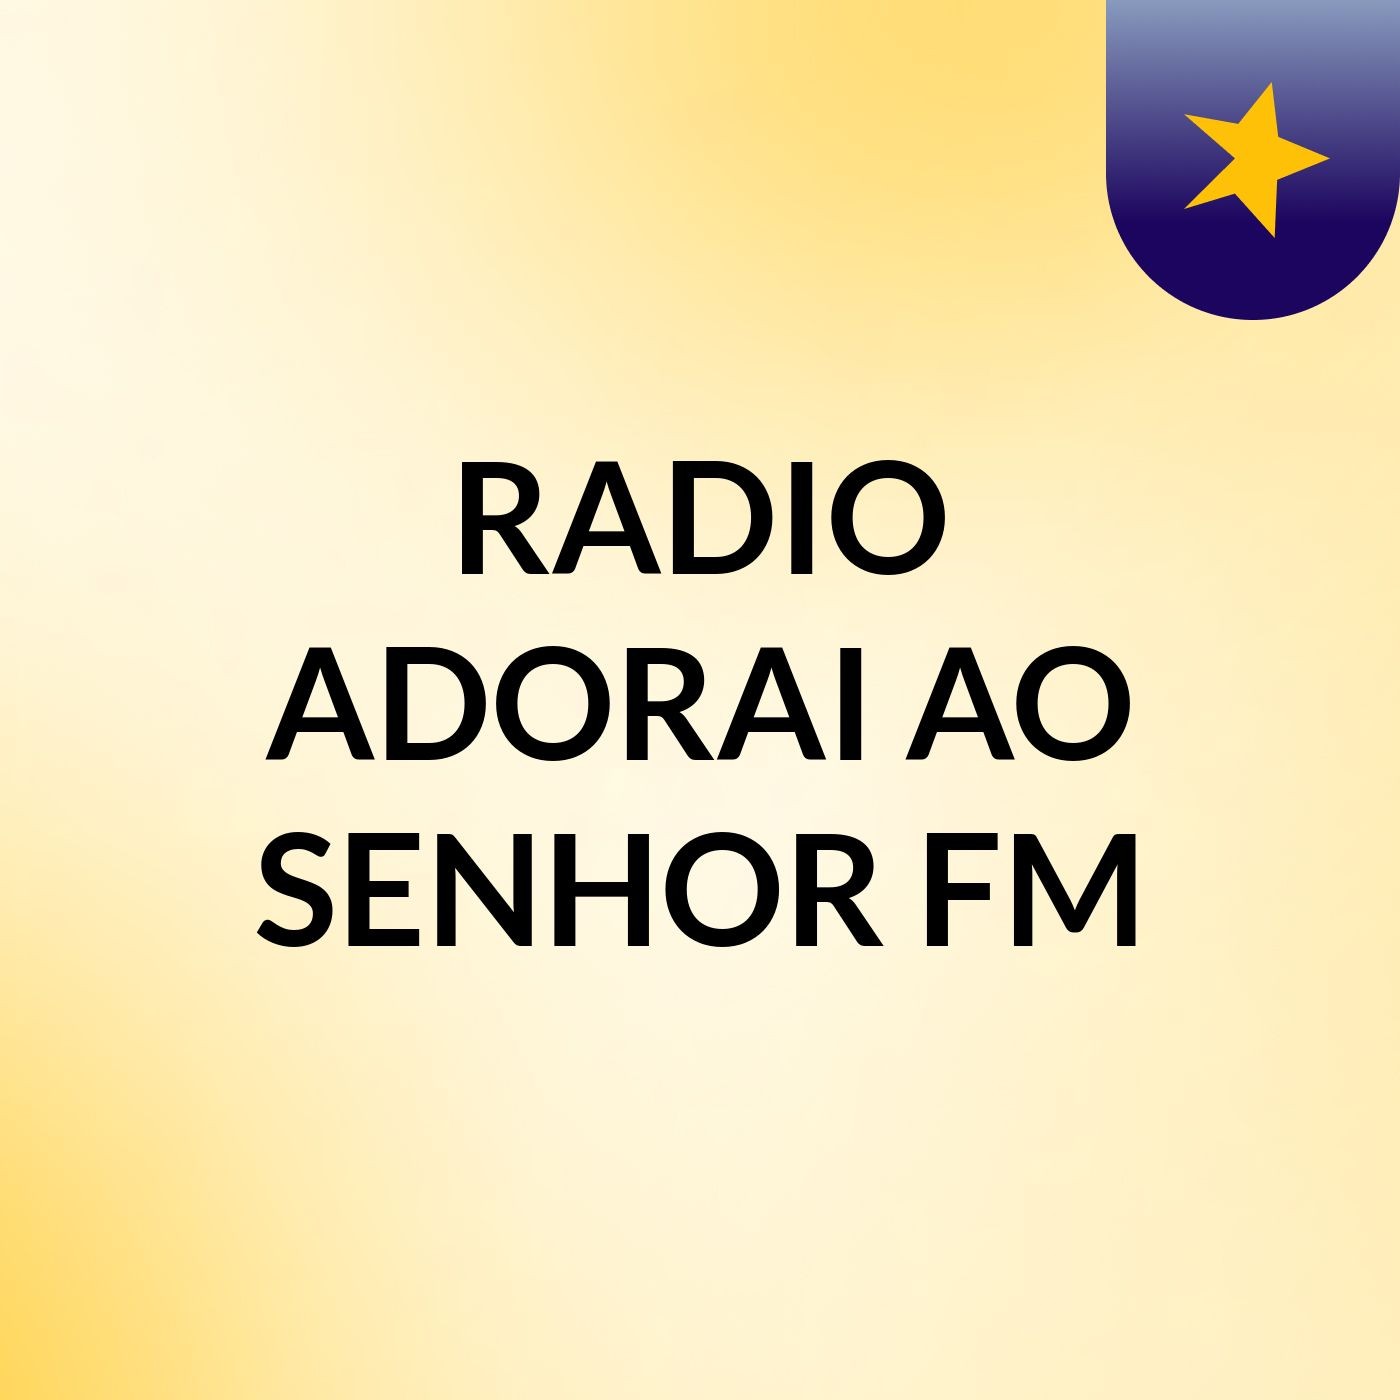 RADIO ADORAI AO SENHOR FM